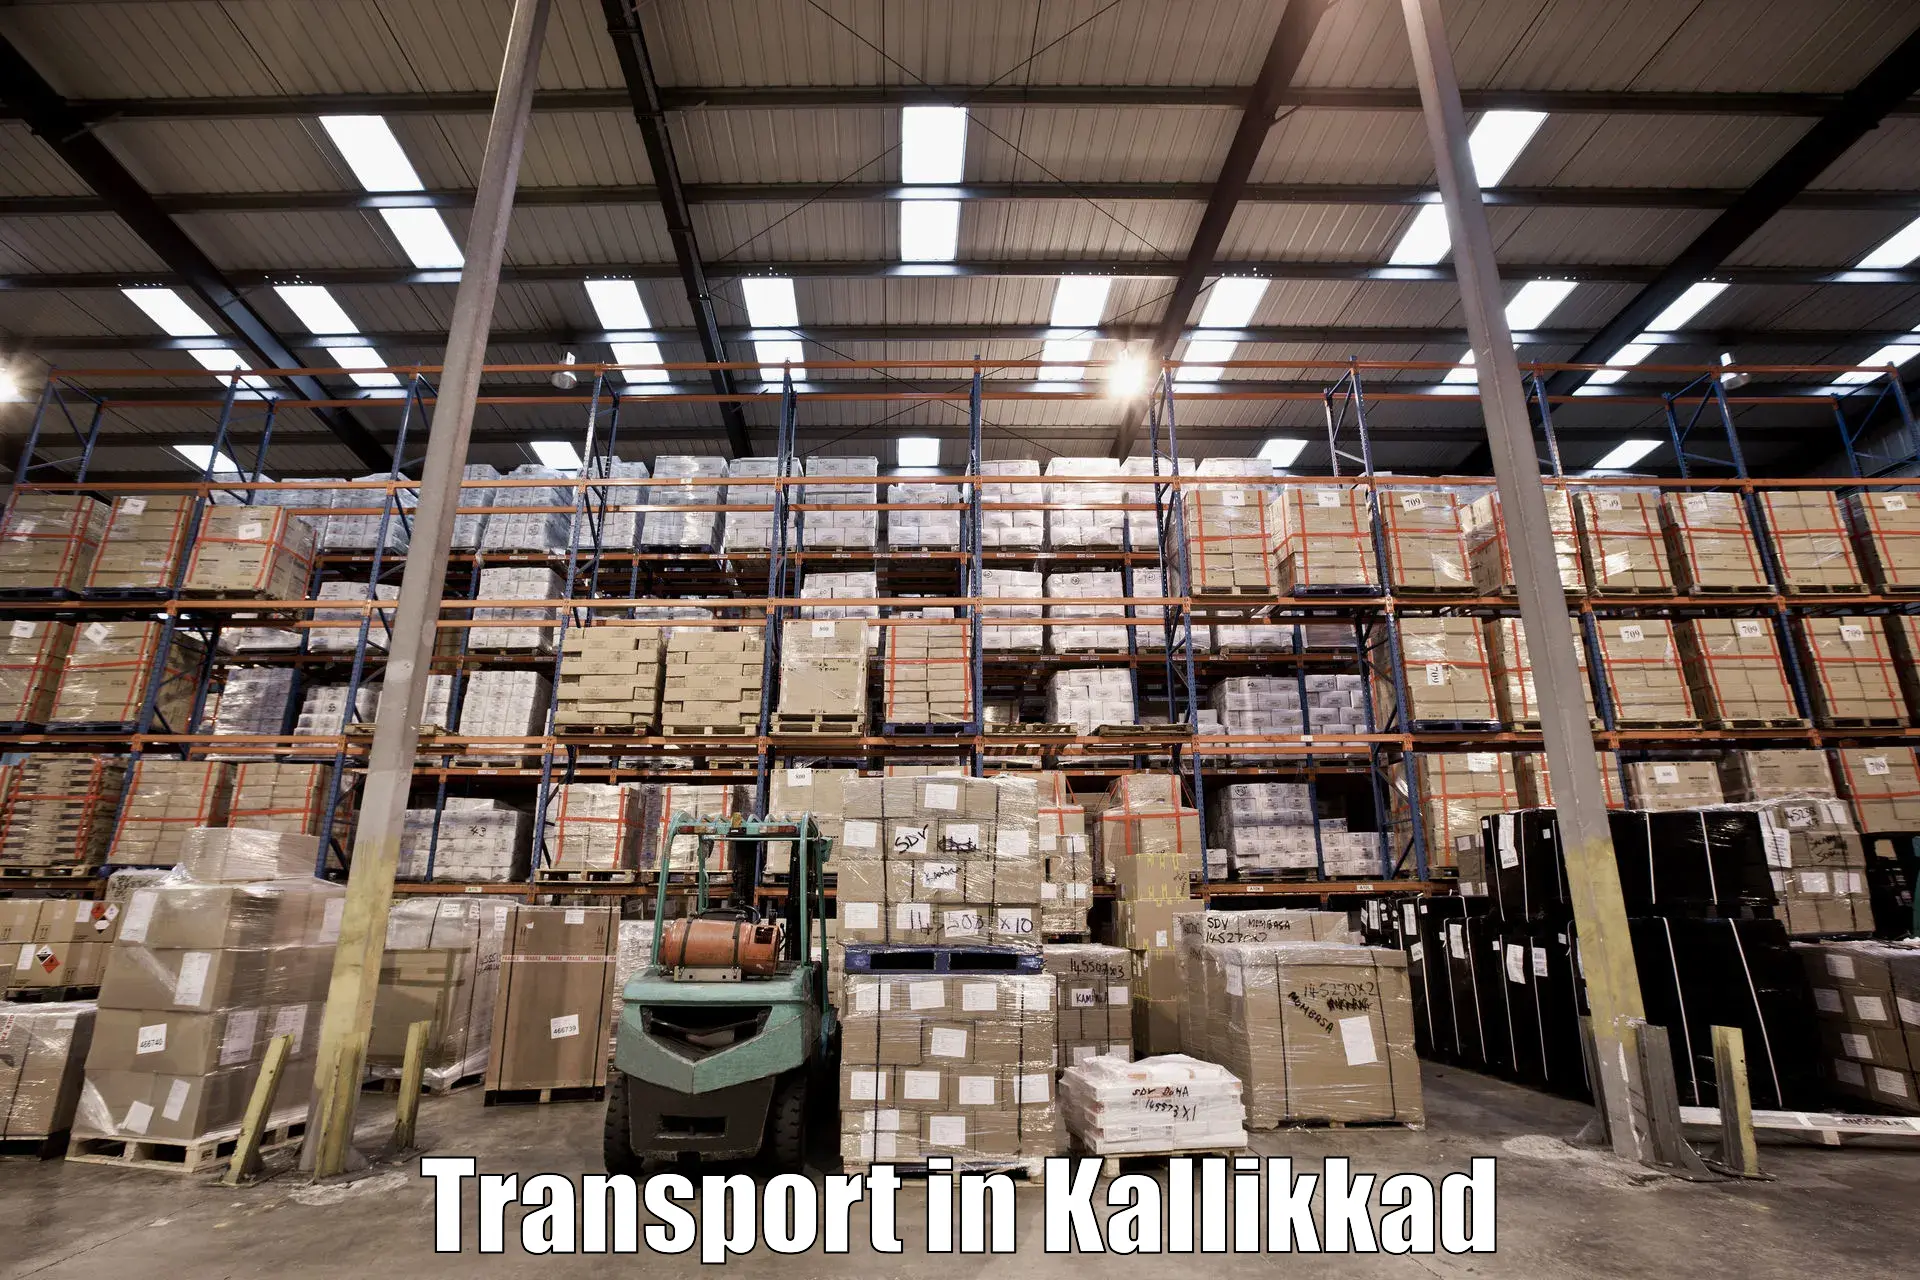 Intercity goods transport in Kallikkad